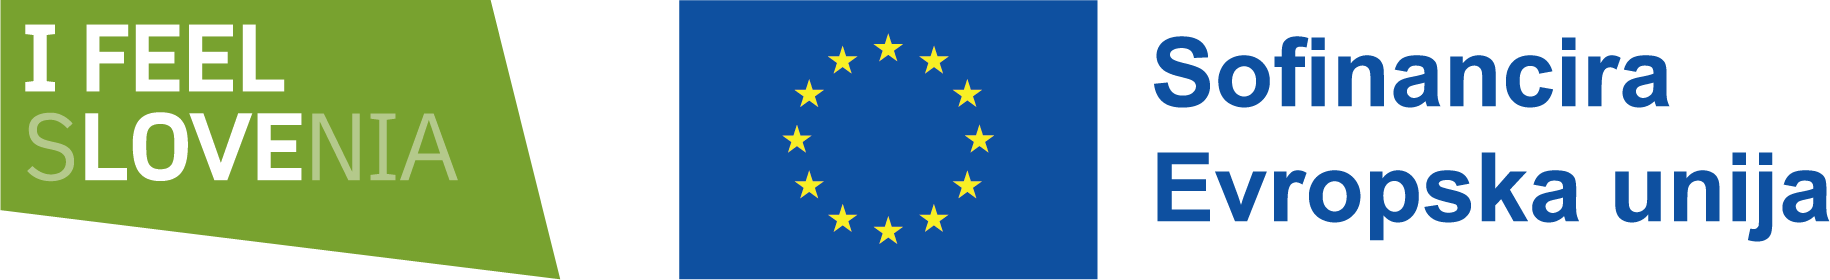 logo_ifeelslovenia_sofinancira_eu (002)